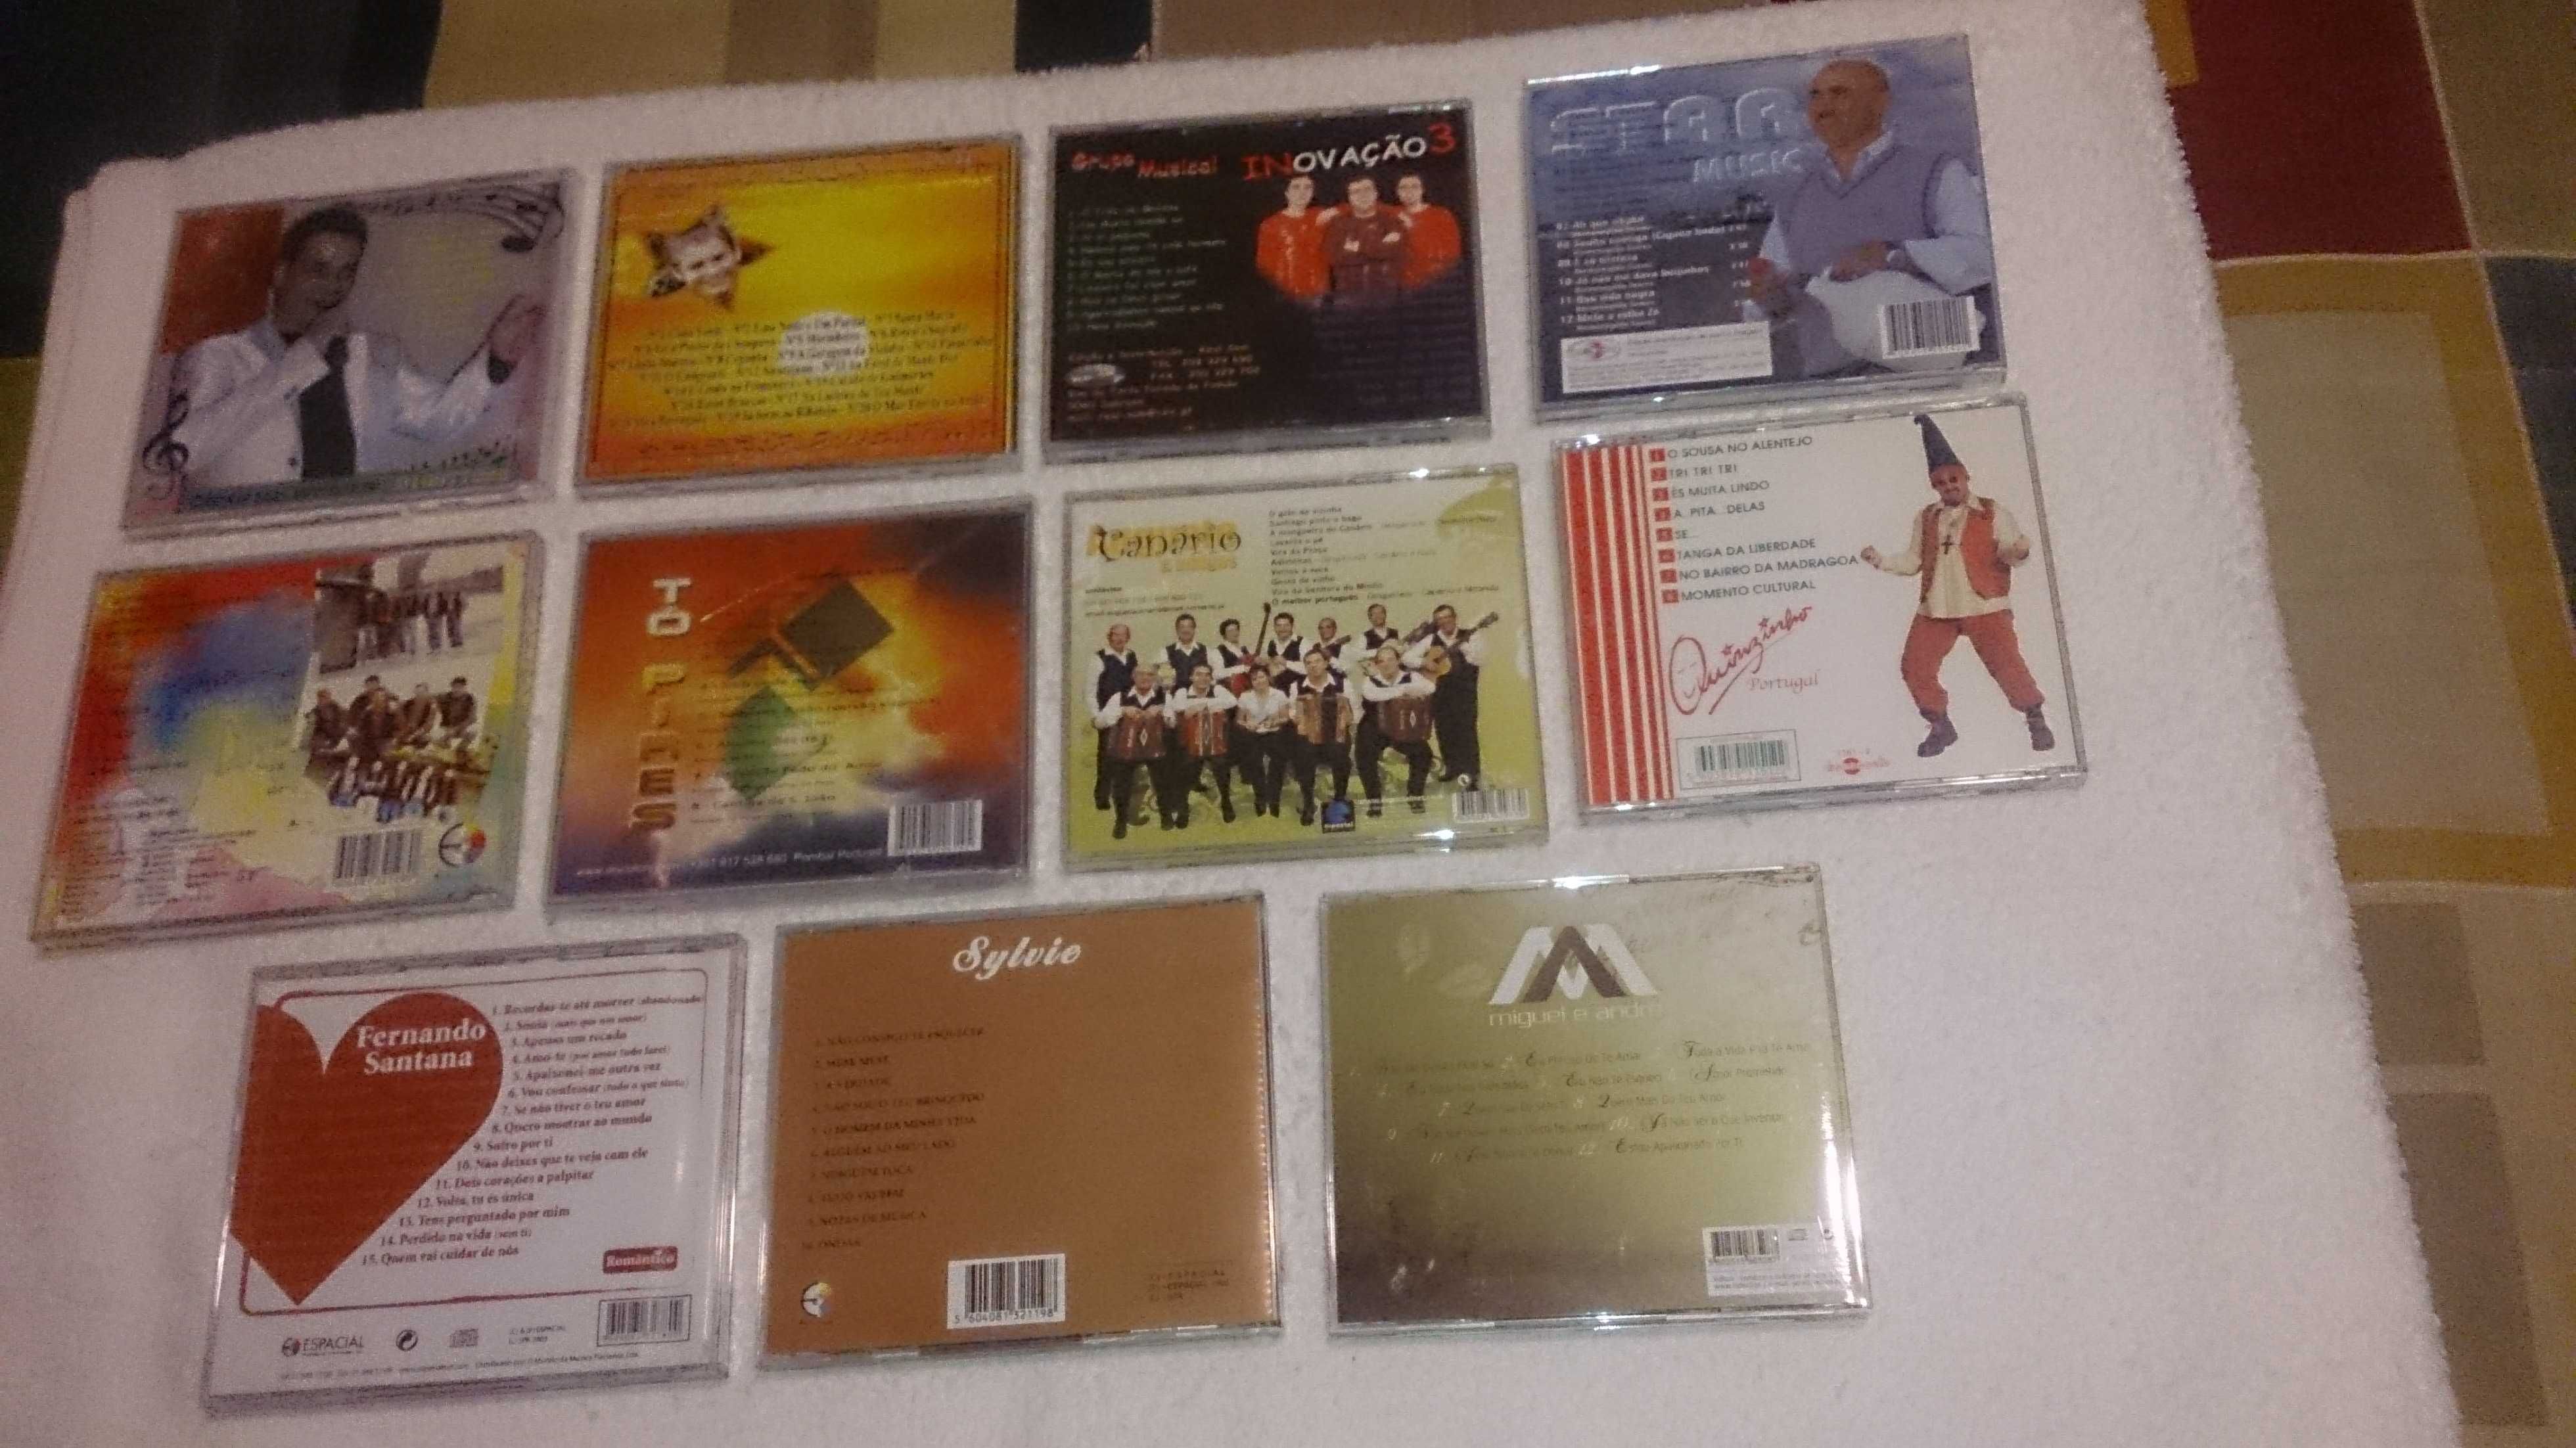 música pimba / popular (albatroz, canário, santana) vários cds